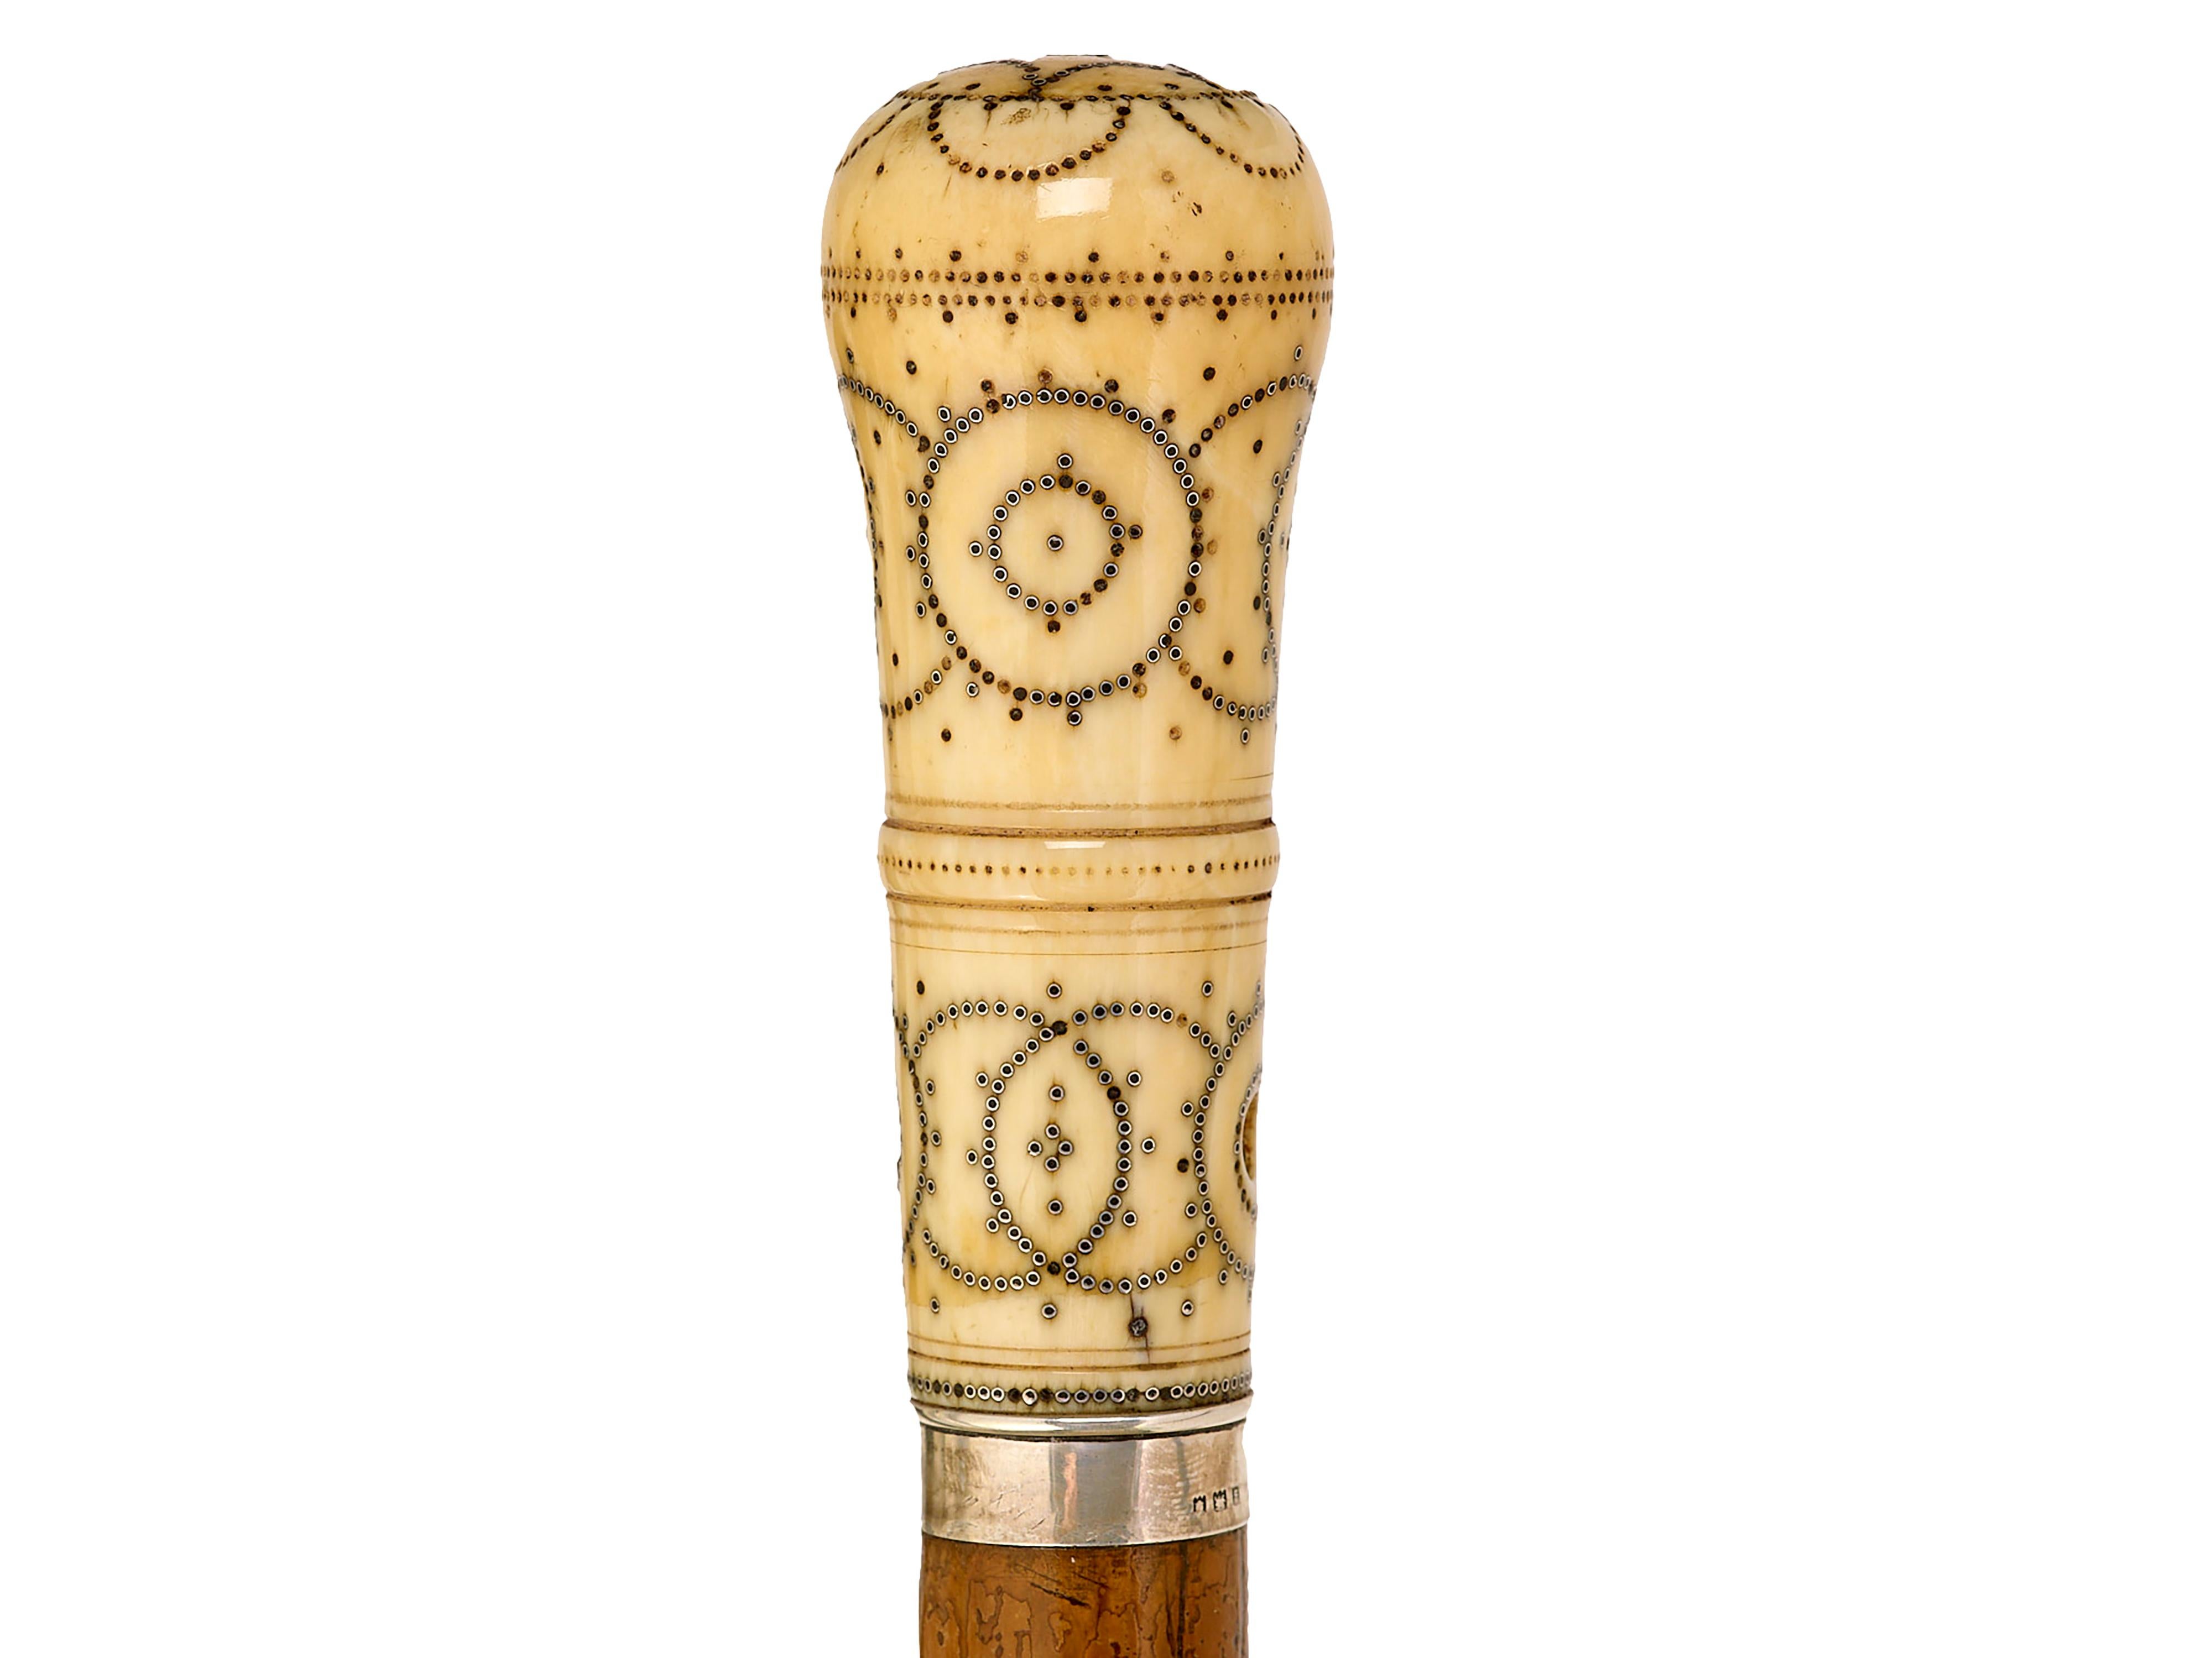 Canne à pied du 17e siècle à décor de piquet LU8492234907052
Pommeau travaillé en piquet, sur tige en malacca avec virole d'origine. Circa 1690. 
Le numéro de référence de la soumission Ivory sera fourni.
I.L.A. 92 cm, l.4 cm, p.4 cm.
